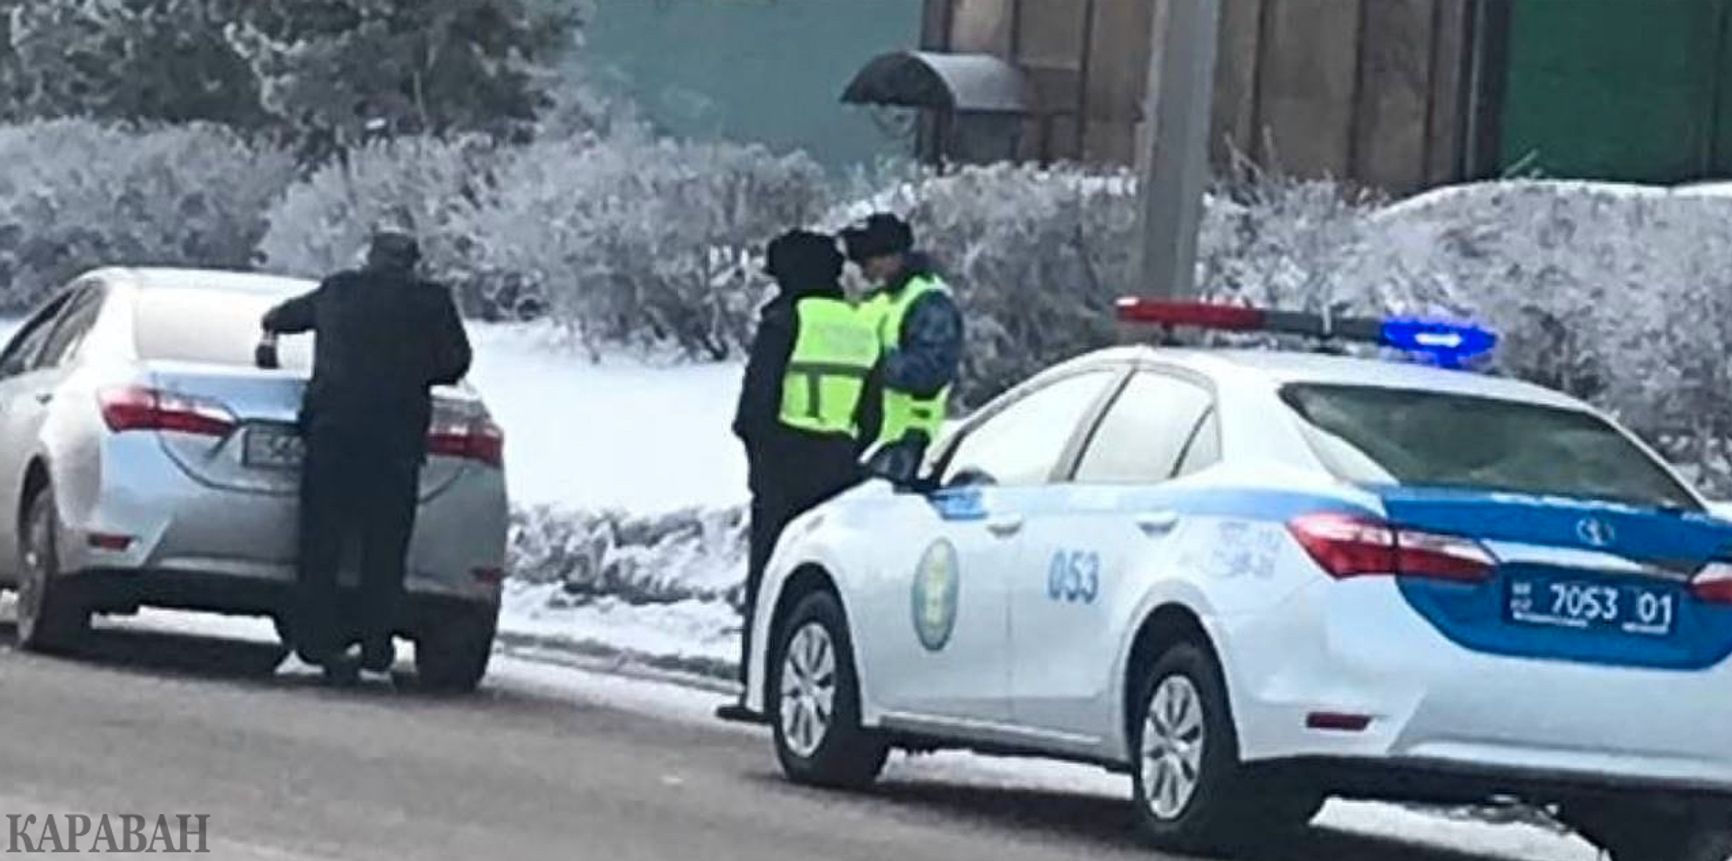 Полицейские заставляют снимать с автомобилей символику с буквой Z